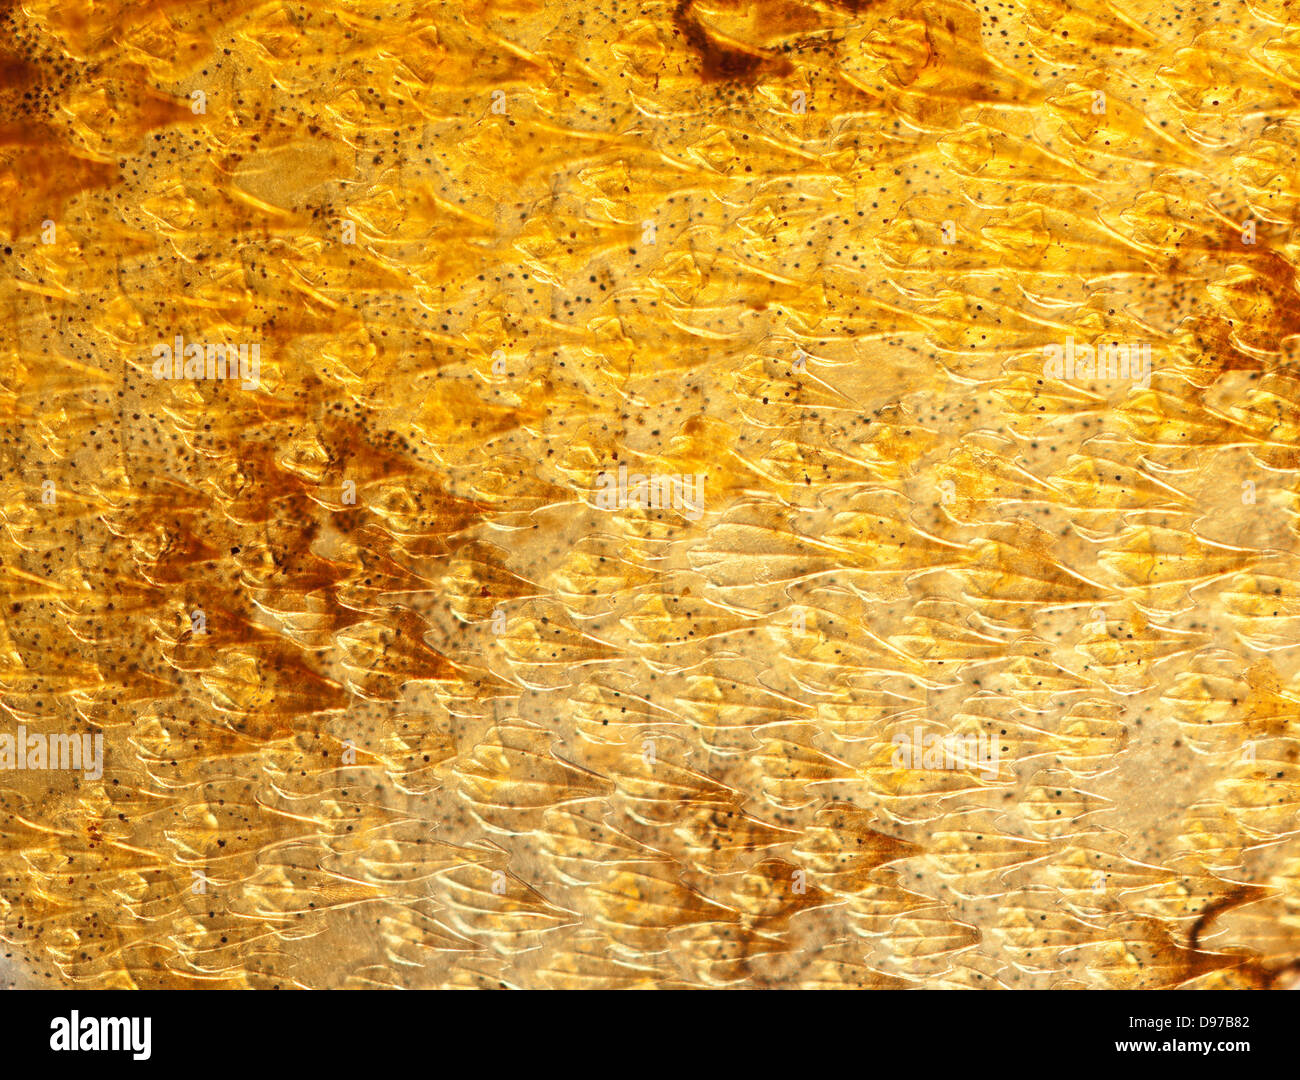 L'aiguillat, Squalus acanthias. Macro close-up de la peau, lumière transmise Banque D'Images